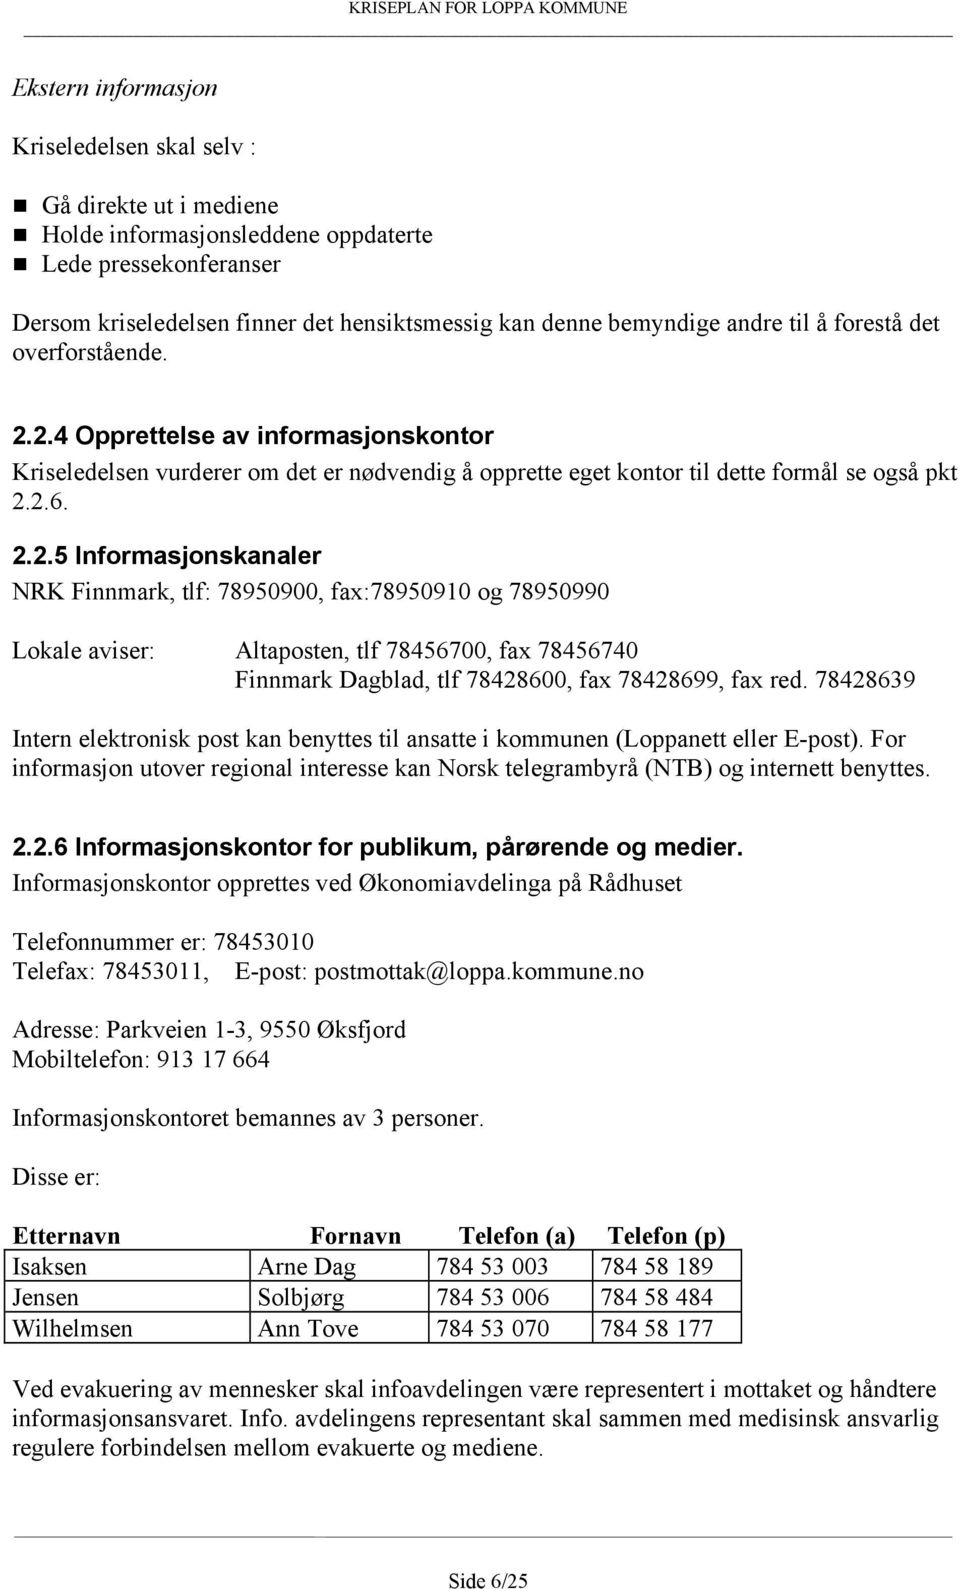 2.4 Opprettelse av informasjonskontor Kriseledelsen vurderer om det er nødvendig å opprette eget kontor til dette formål se også pkt 2.2.6. 2.2.5 Informasjonskanaler NRK Finnmark, tlf: 78950900, fax:78950910 og 78950990 Lokale aviser: Altaposten, tlf 78456700, fax 78456740 Finnmark Dagblad, tlf 78428600, fax 78428699, fax red.